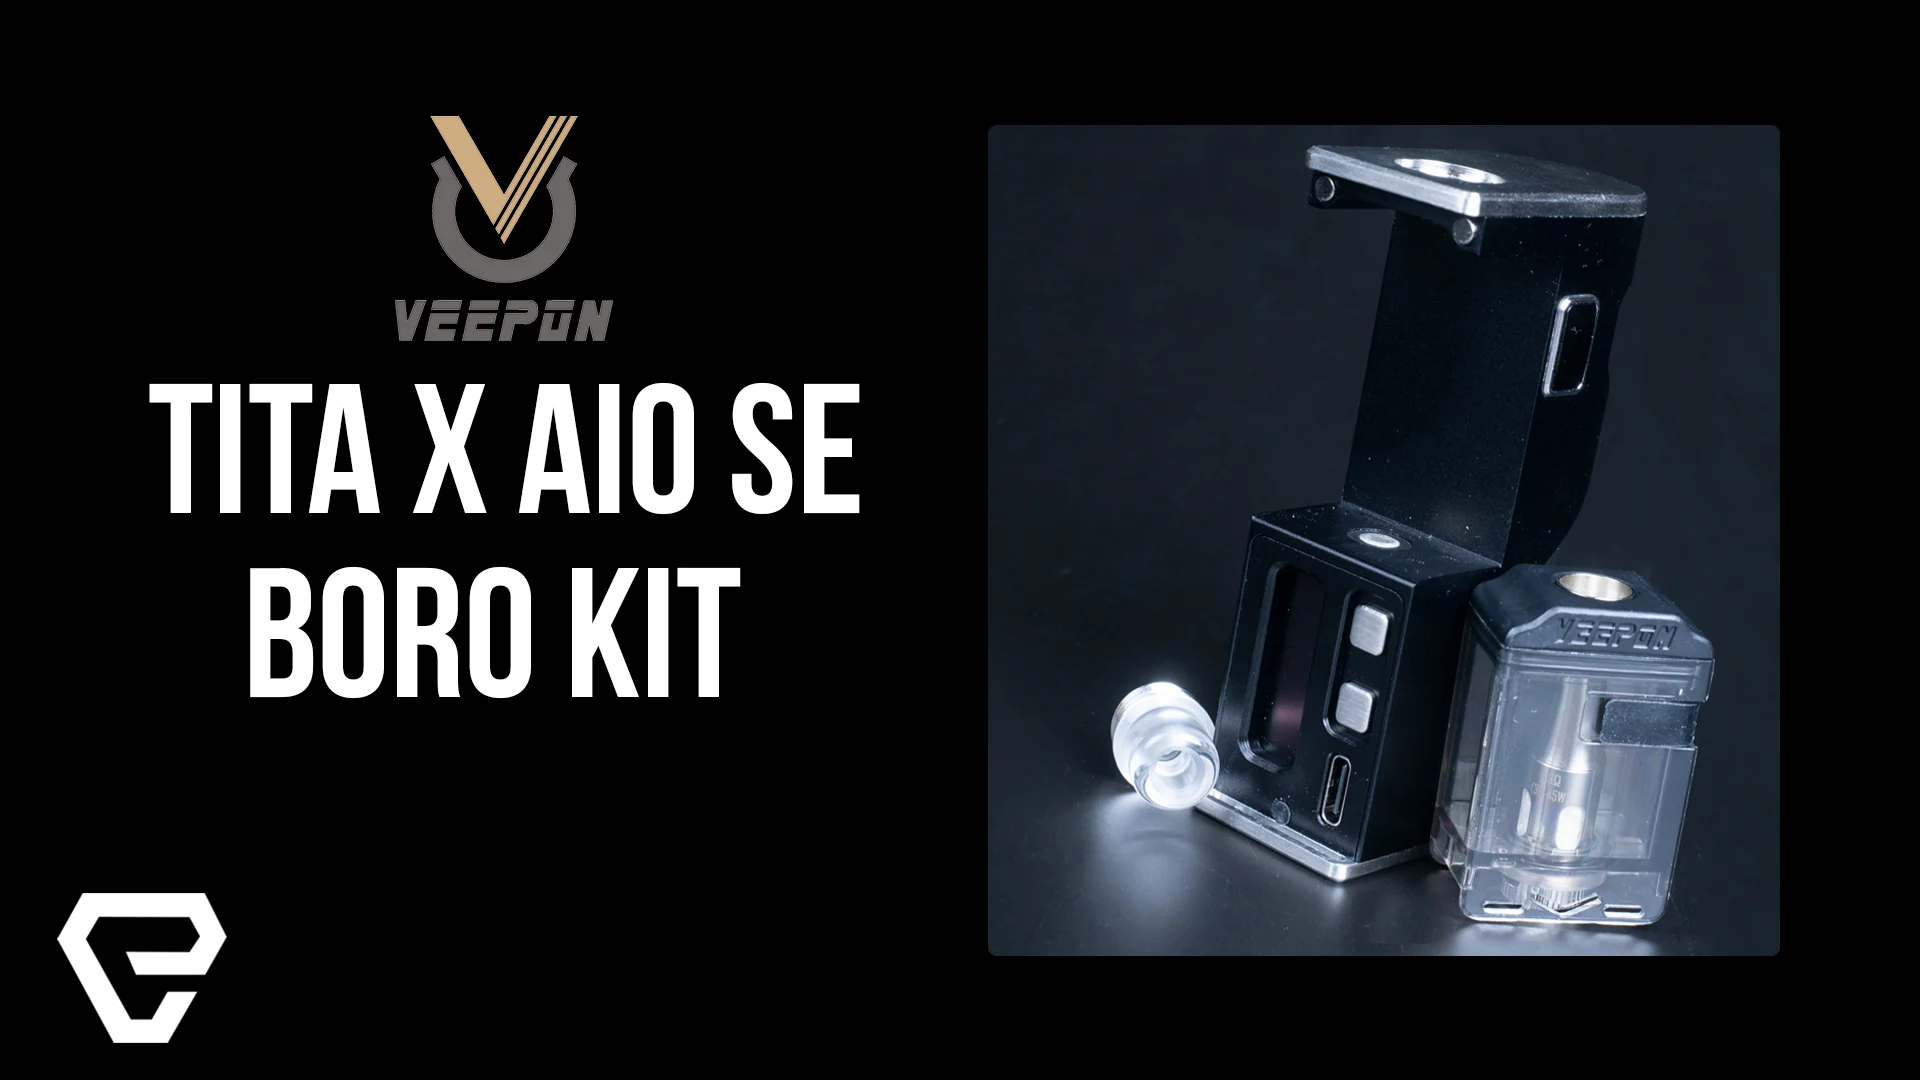 Vape Product Review: Veepon TITA X AIO SE Boro Kit!